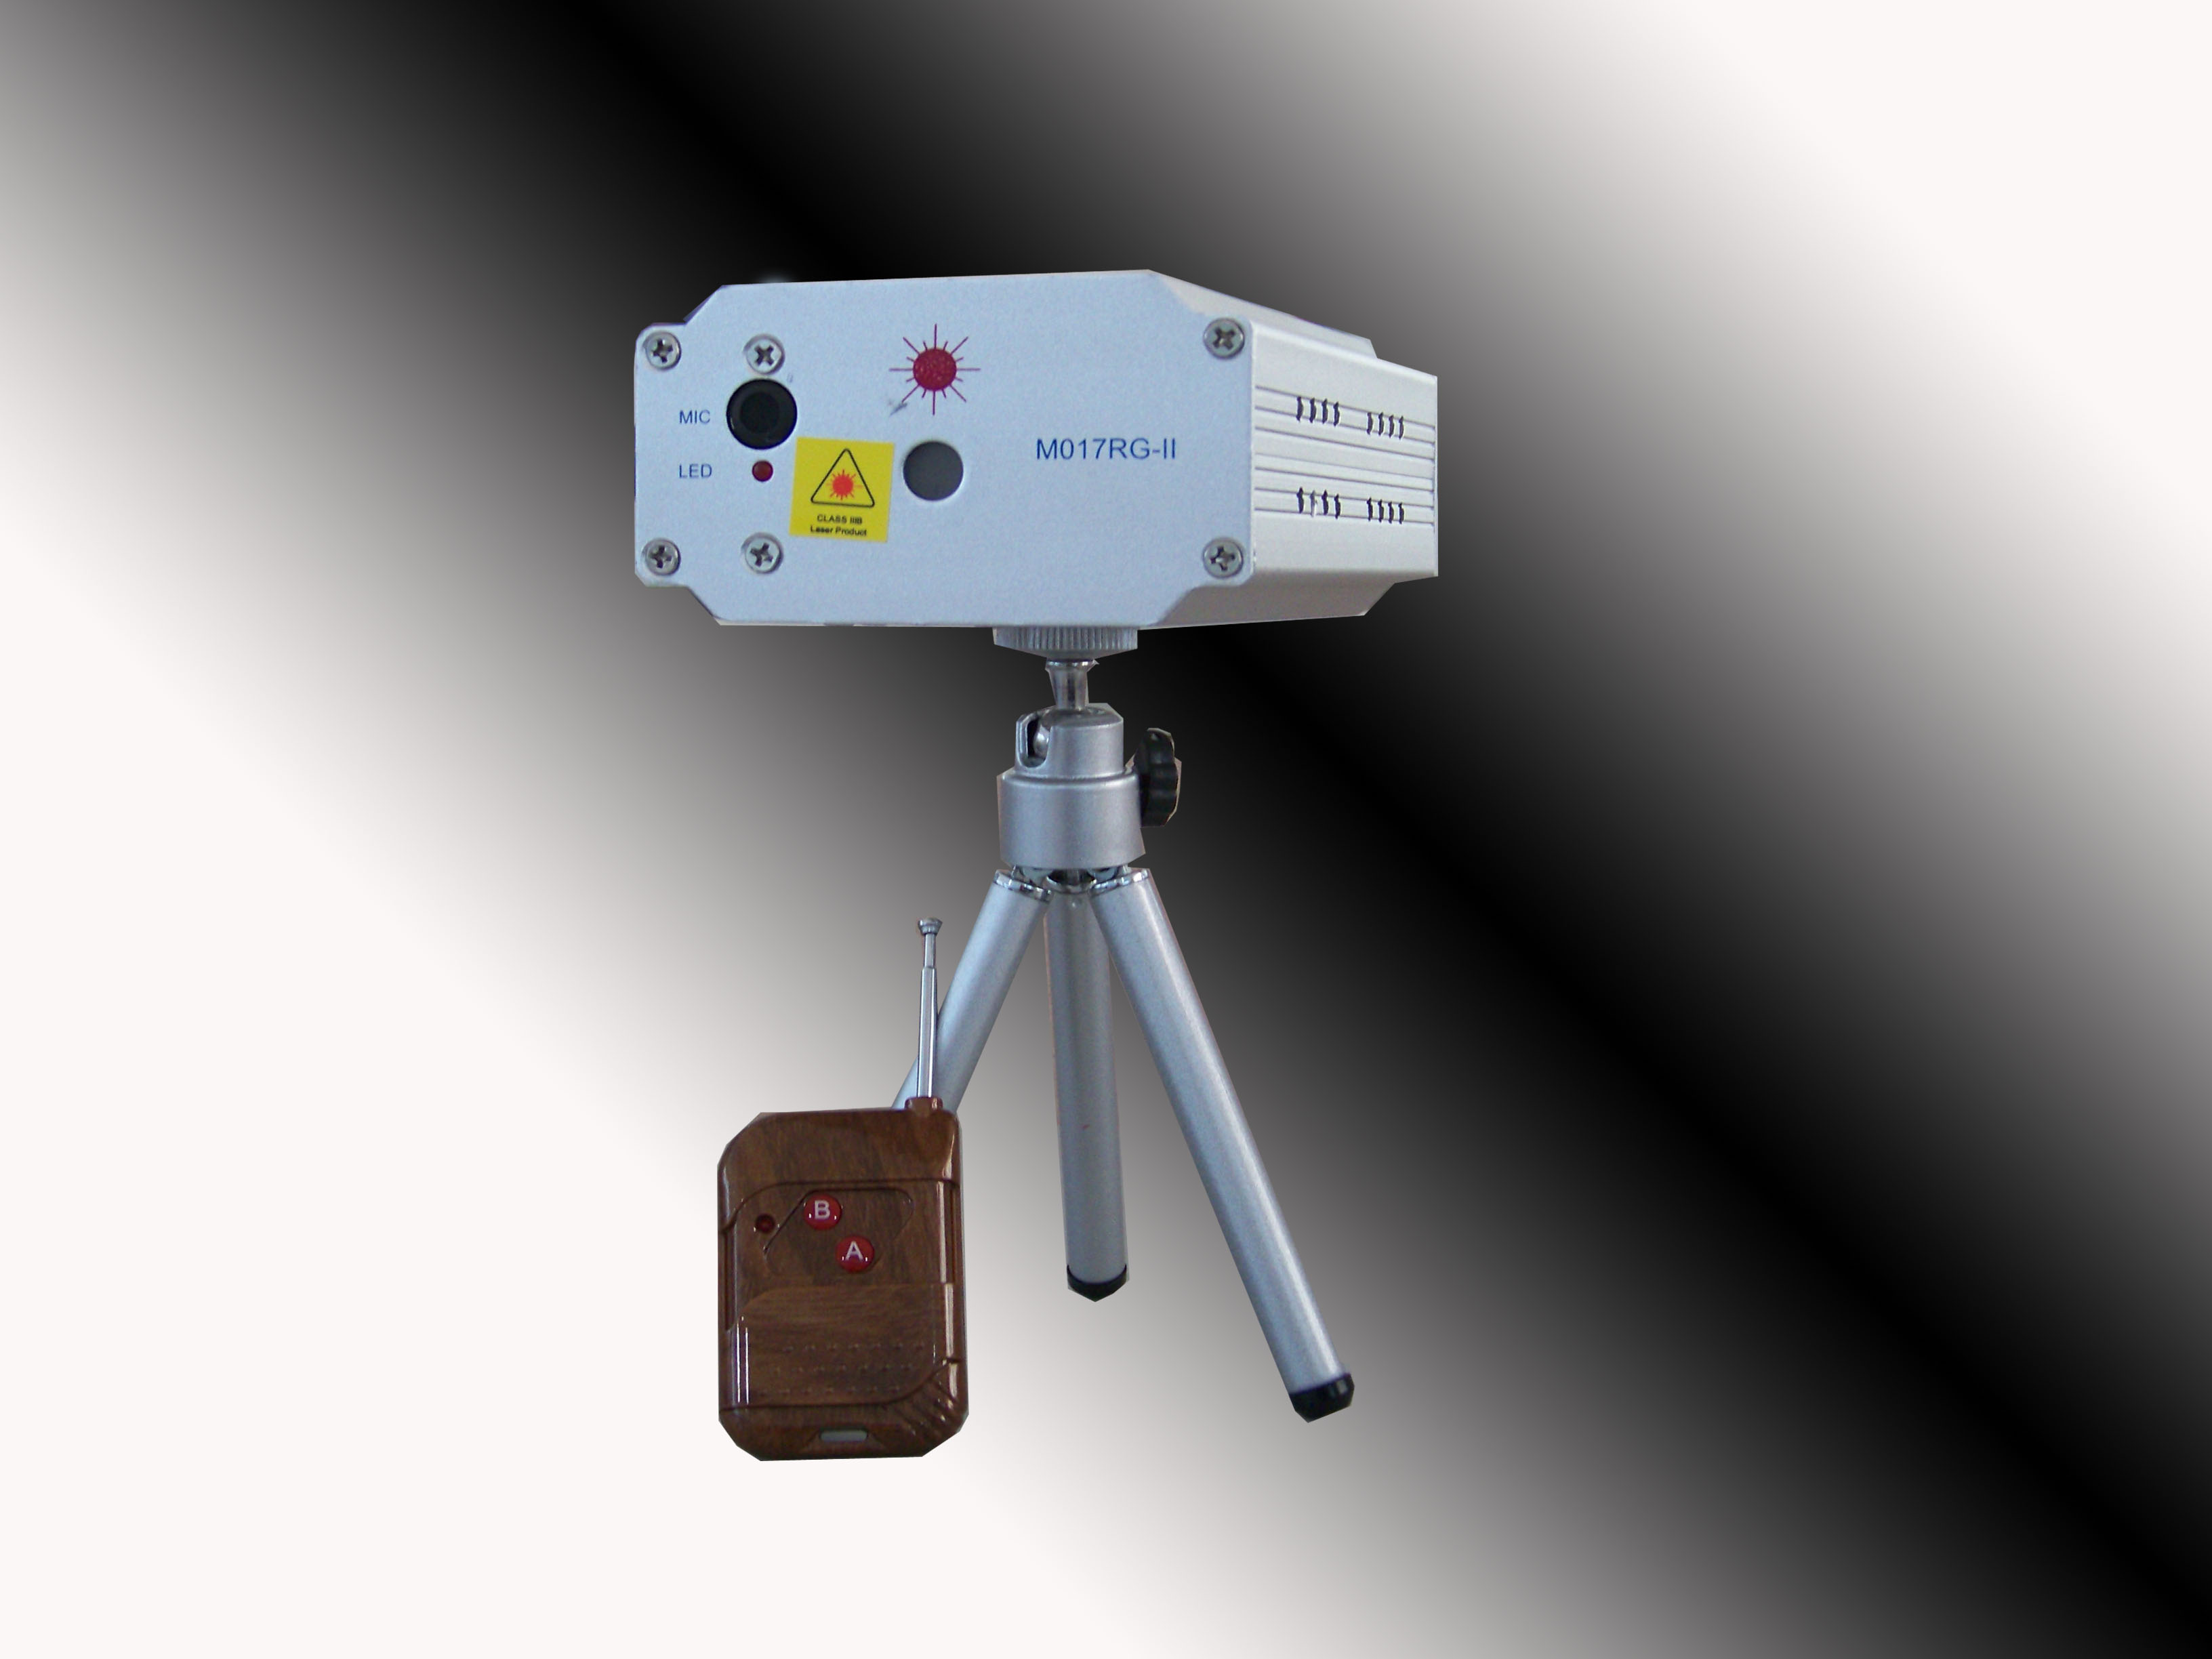 Προτζεκτορας Φωτορυθμικό Projector Laser Mg-017RG-II Lightings W/Remote Control 35093 με κόκκινο & πράσινο χρώμα με τηλεχειριστήριο